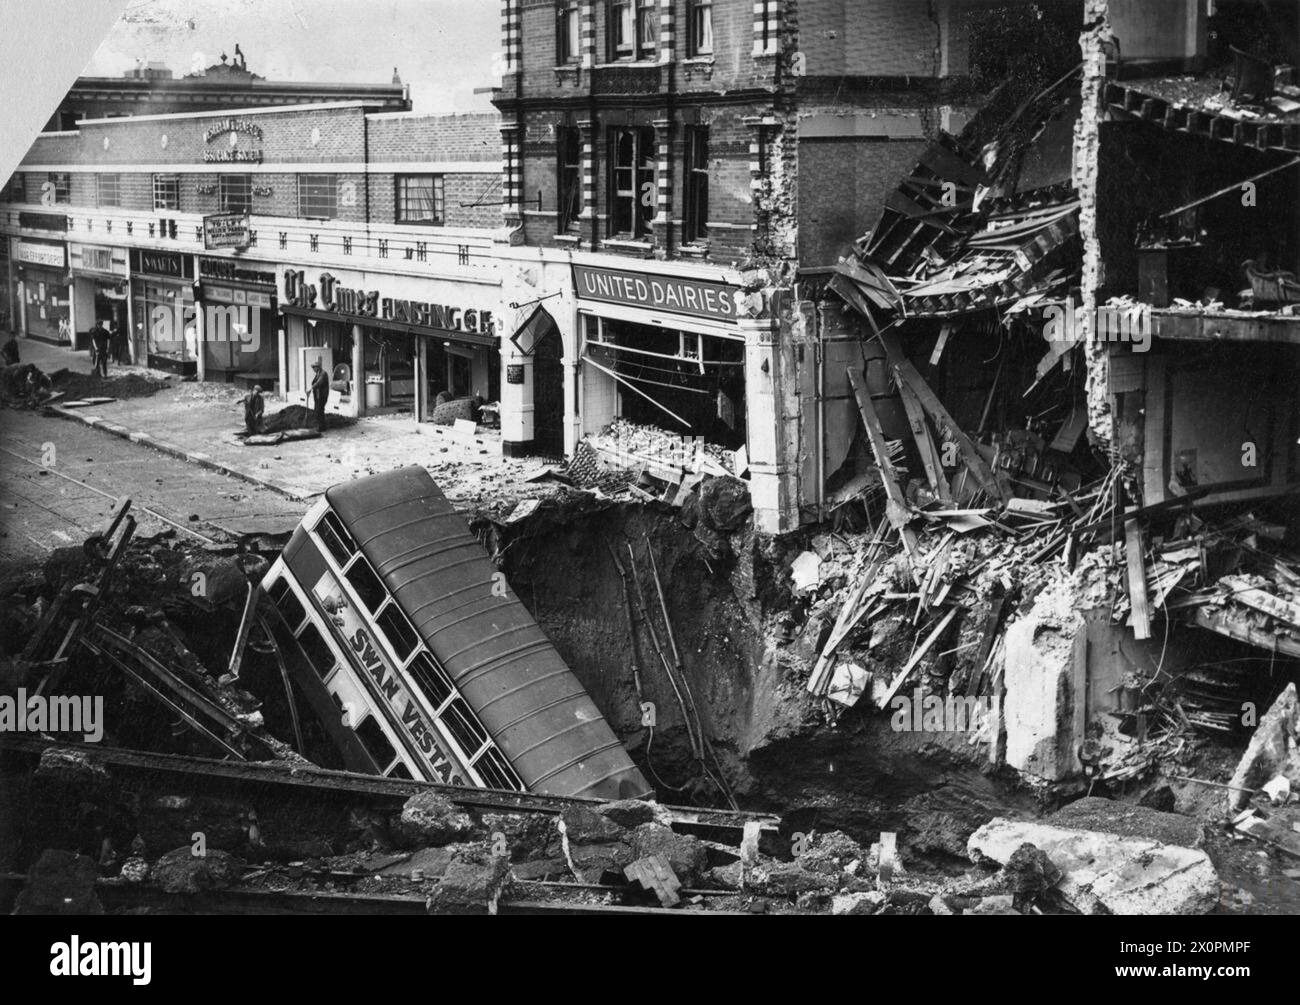 THE LONDON BLITZ 1940 - 1941 - Foto aufgenommen am 15.10.40. Um 20.02 Uhr am 14. Oktober 1940 fiel eine 1400 kg schwere Halbpanzerbombe auf der Balham U-Bahn Station ab, die den hier gezeigten massiven Krater verursachte. Die Bombe explodierte 32 Fuß unter der Erde über dem Durchgang, der die beiden Bahnsteige verband. Ein Bus der Linie 88 fuhr in der Verdunkelungszone direkt in den Krater. Etwa 600 Menschen waren in der Station untergebracht, als die Bombe explodierte. Wasser-, Gas- und Abwasserleitungen waren alle kaputt und viele Menschen ertranken als der Bahnhof überschwemmte. 68 Menschen wurden getötet Stockfoto